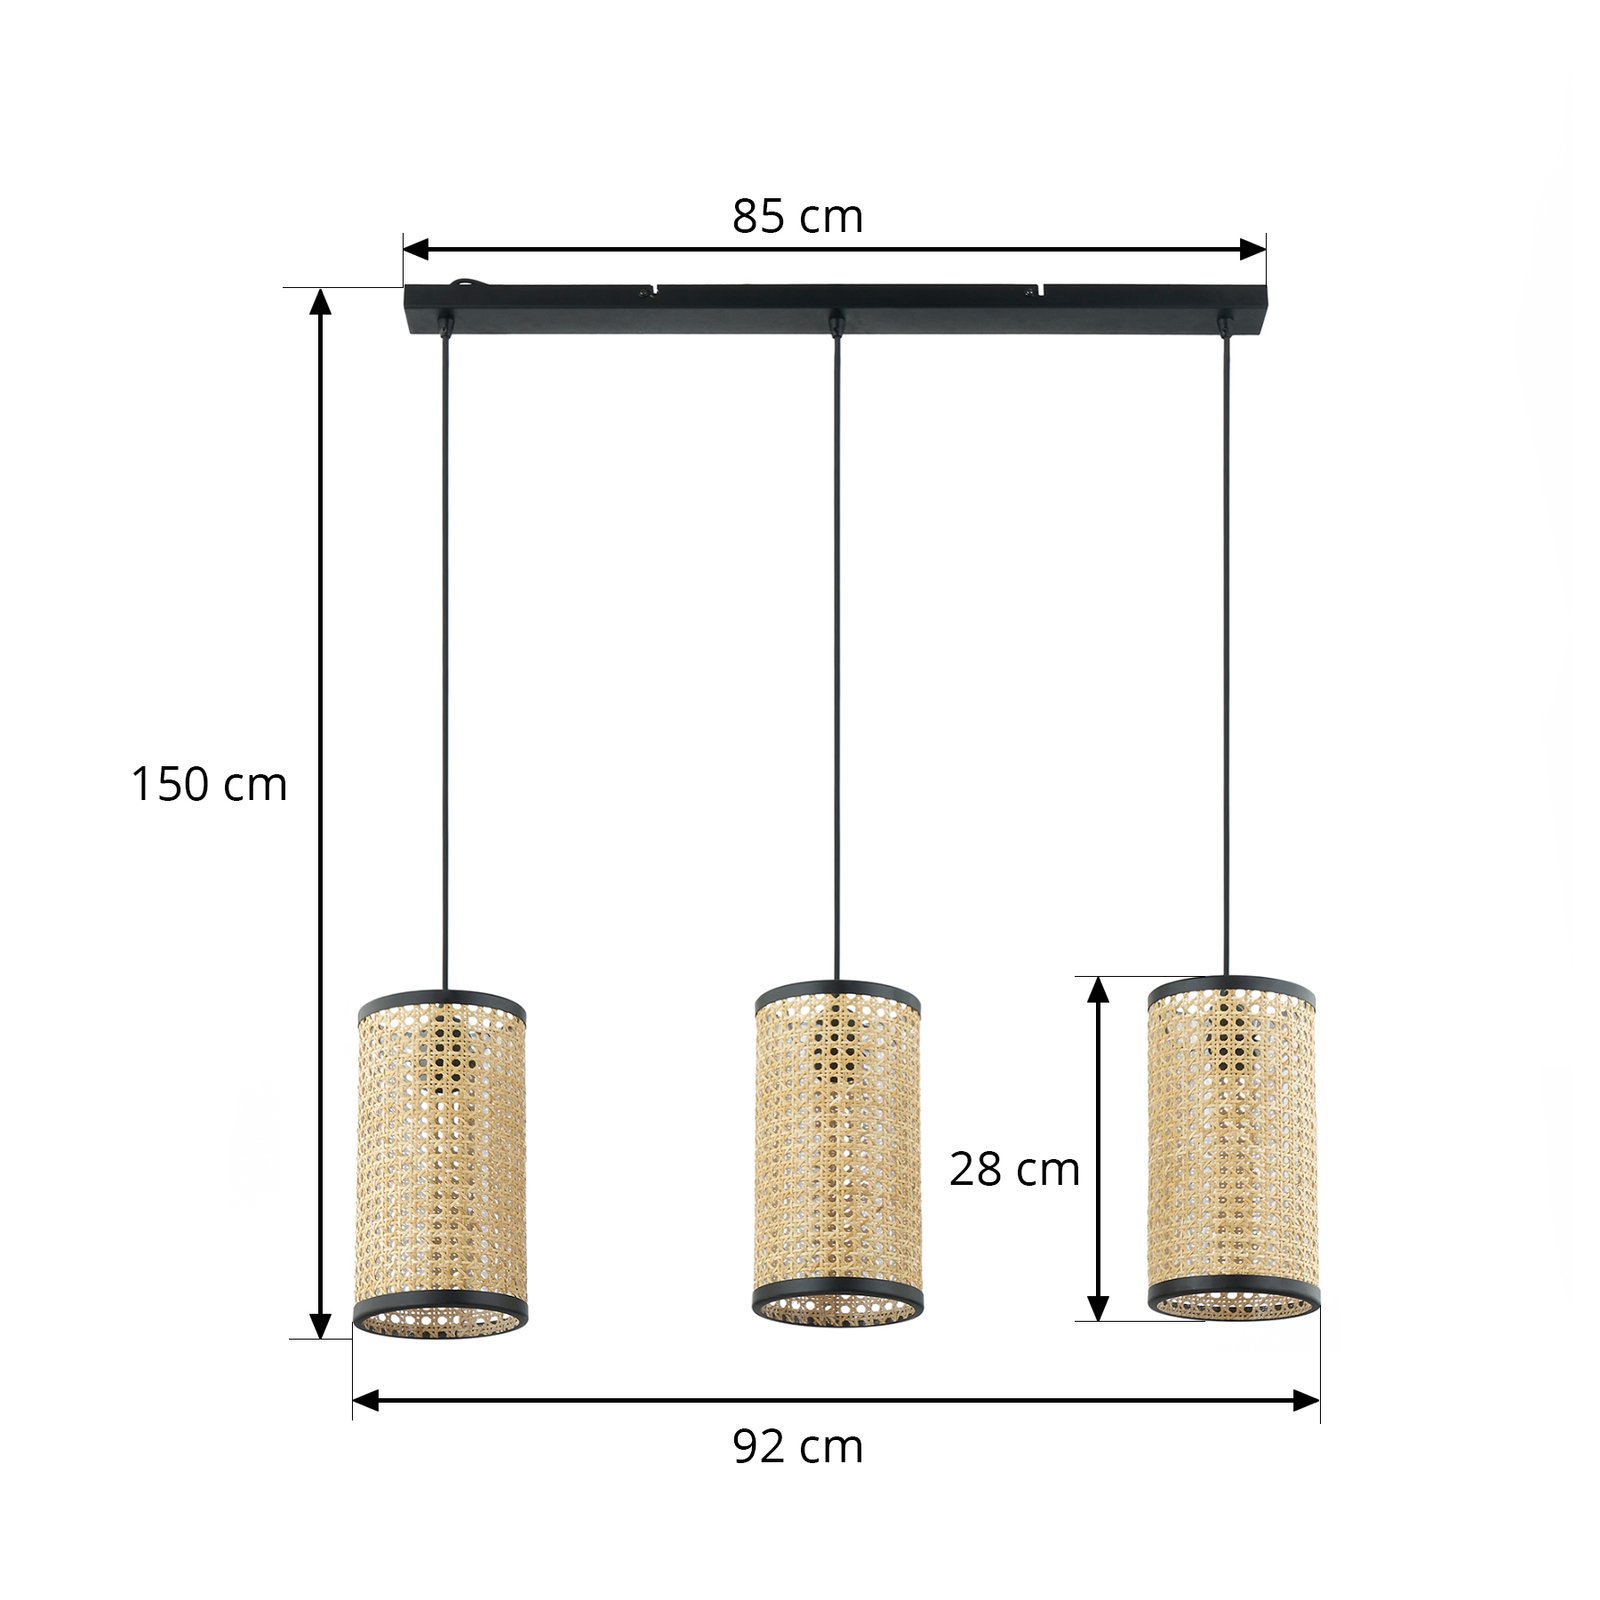 Lindby hanglamp Yaelle, 92 cm lang, 3-lamps, rotan, E27